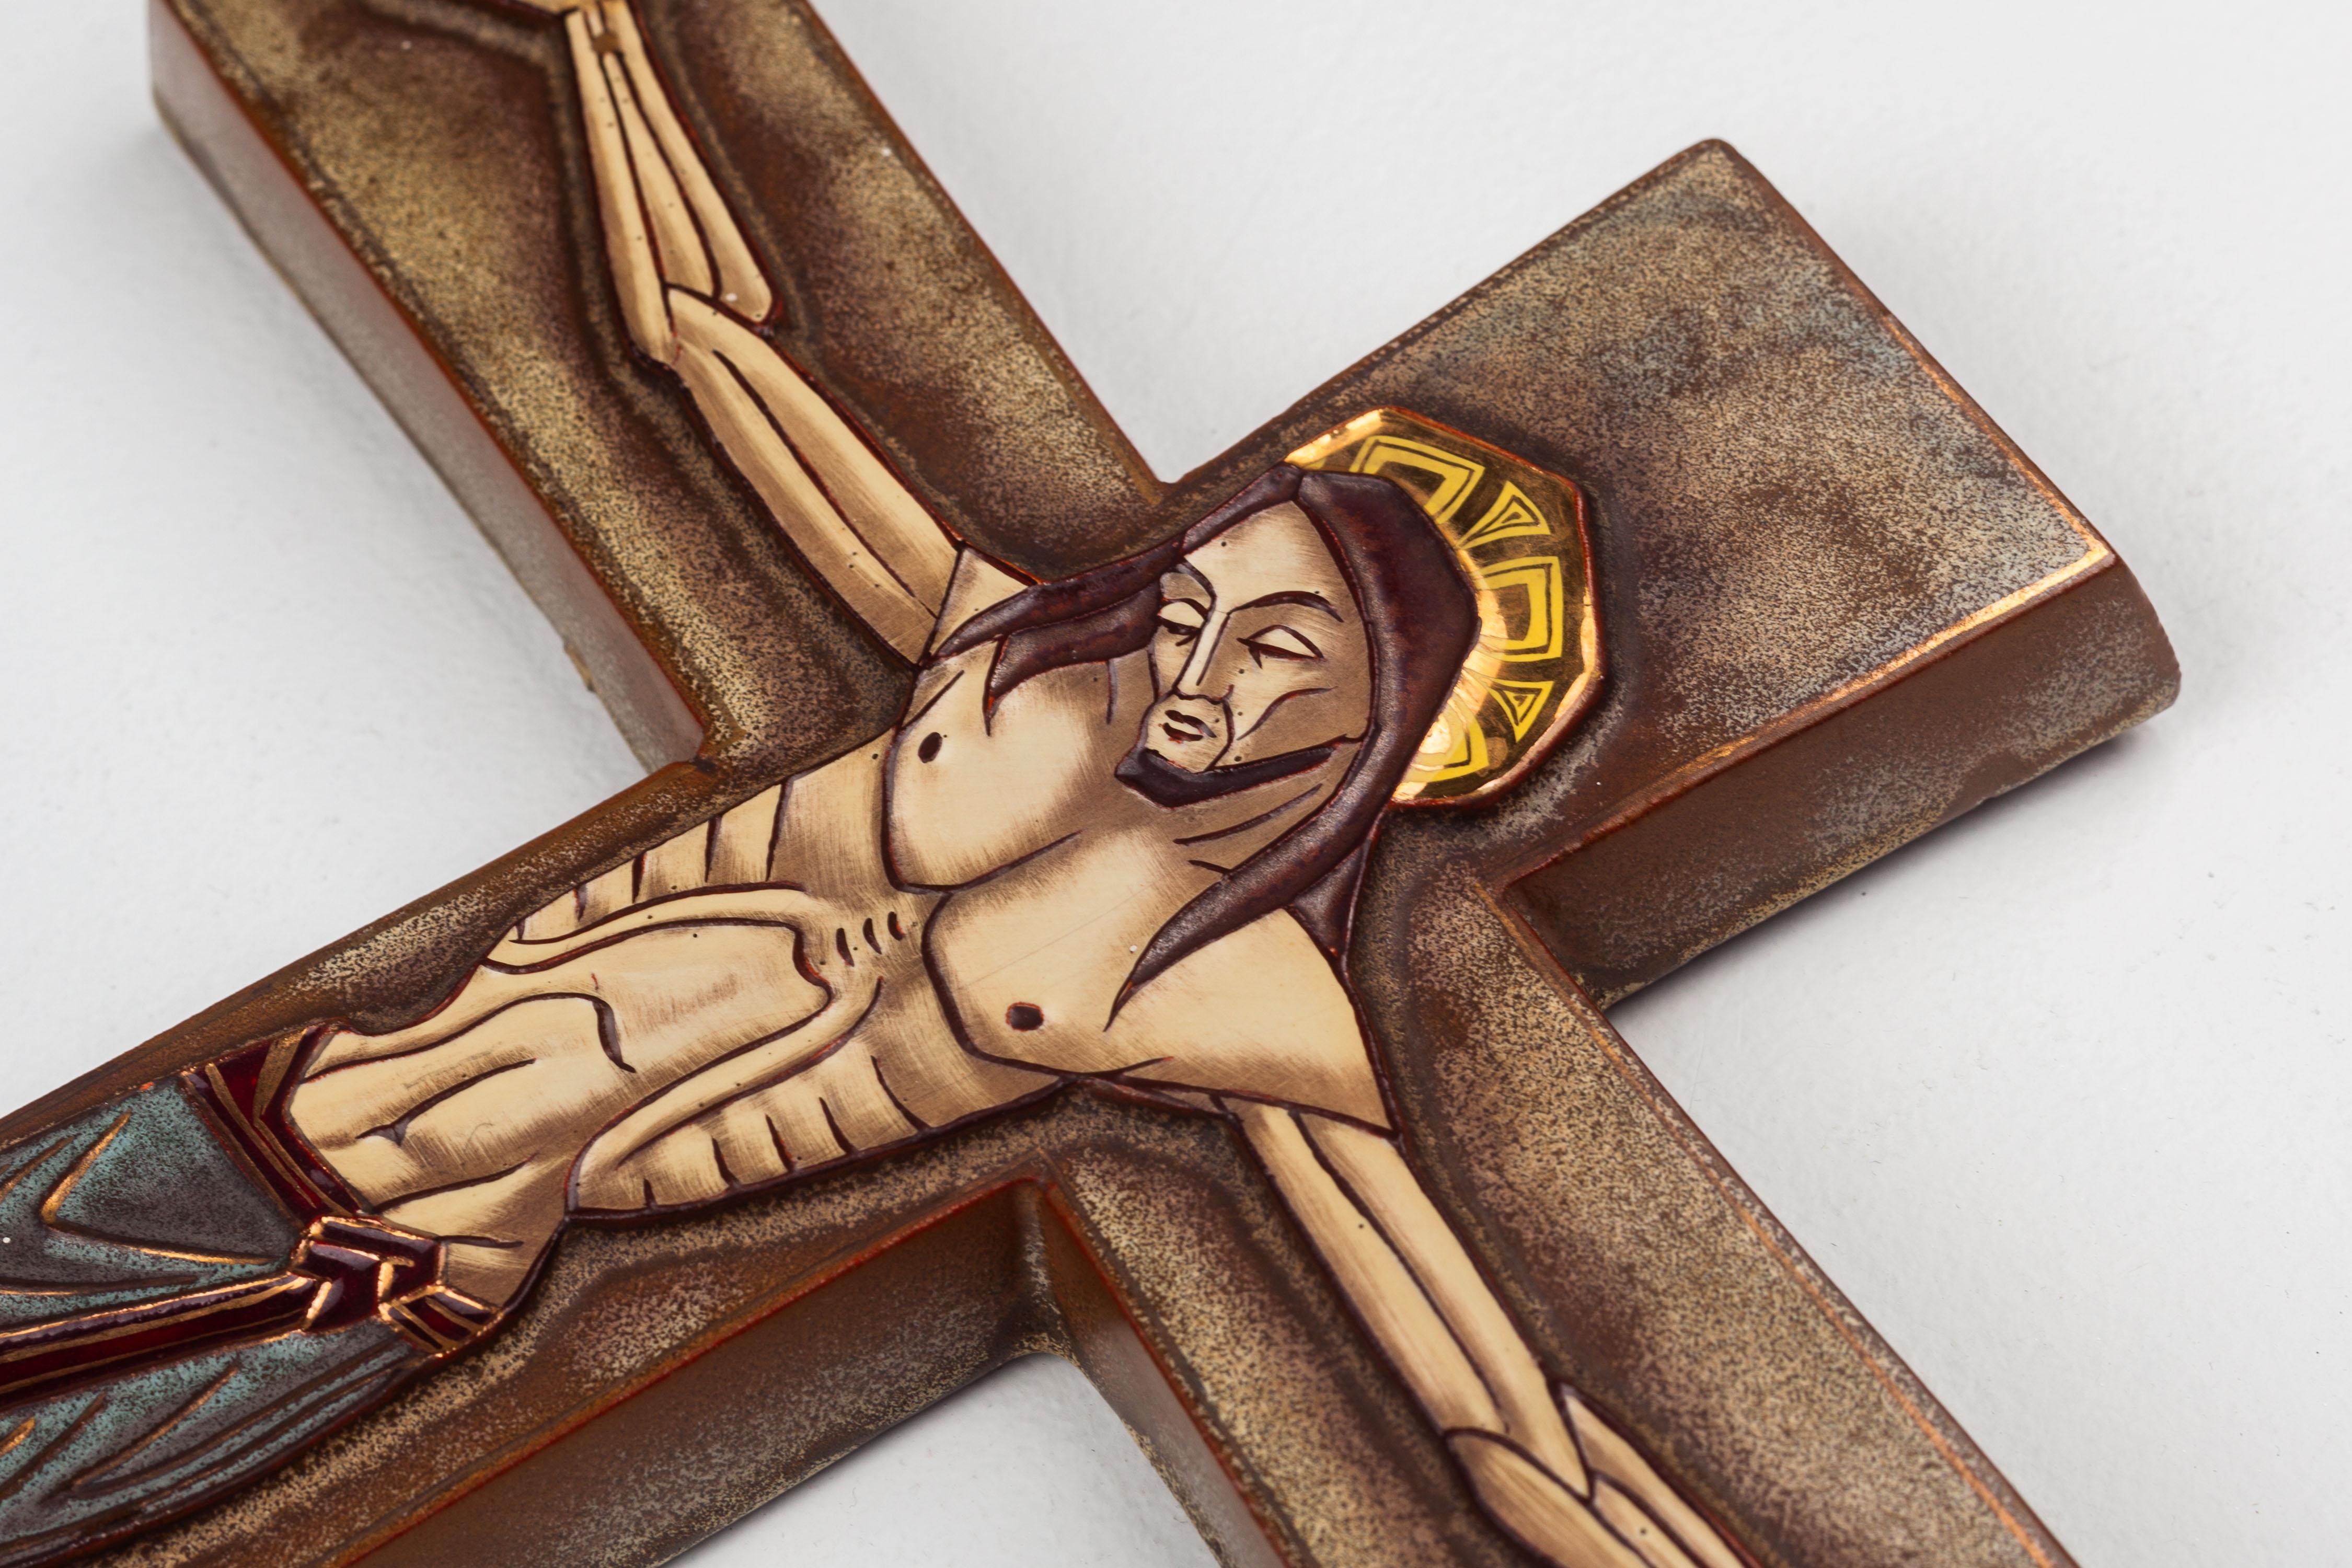 Dieses modernistische Wandkreuz zeigt eine außergewöhnliche Reliefdarstellung der Figur Jesu Christi im Art-Déco-Stil, die Gelassenheit und Erhabenheit ausstrahlt. Es zeichnet sich durch eine ausgefeilte erdige Farbpalette mit präzisen